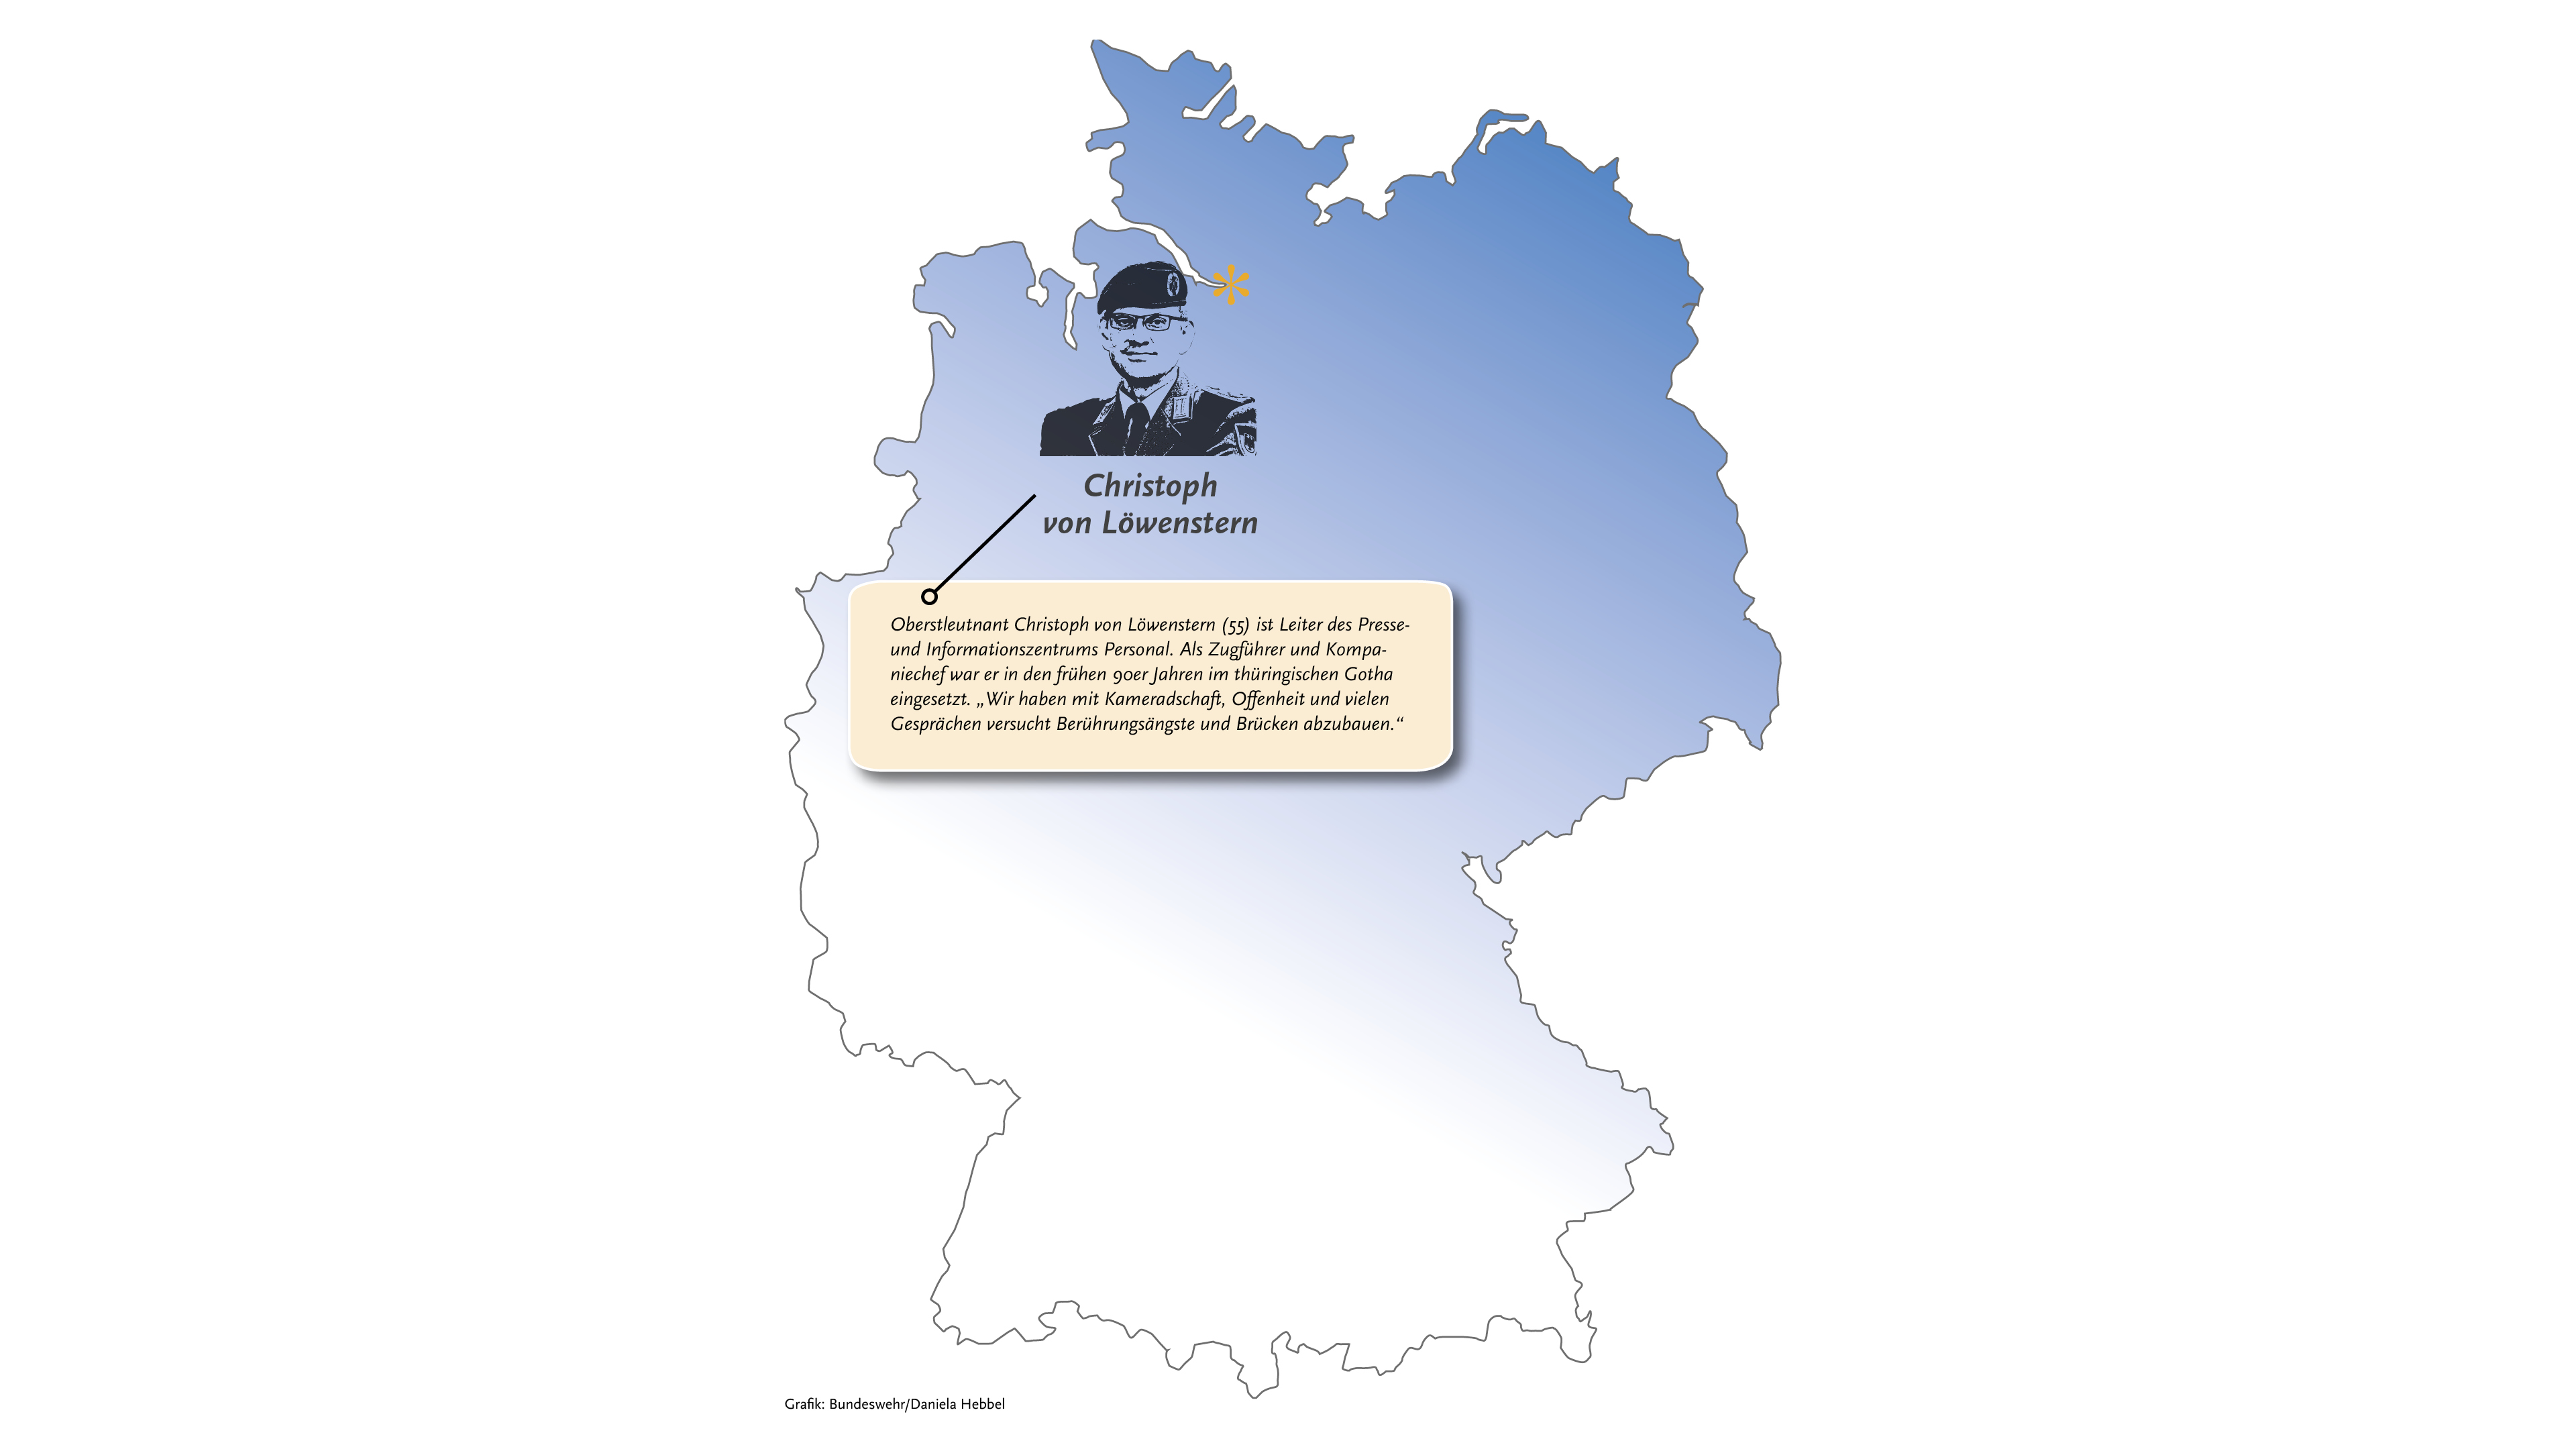 Die Deutschlandkarte mit dem markierten Geburtsort und dem Bild von Oberstleutnant Christoph von Löwenstern